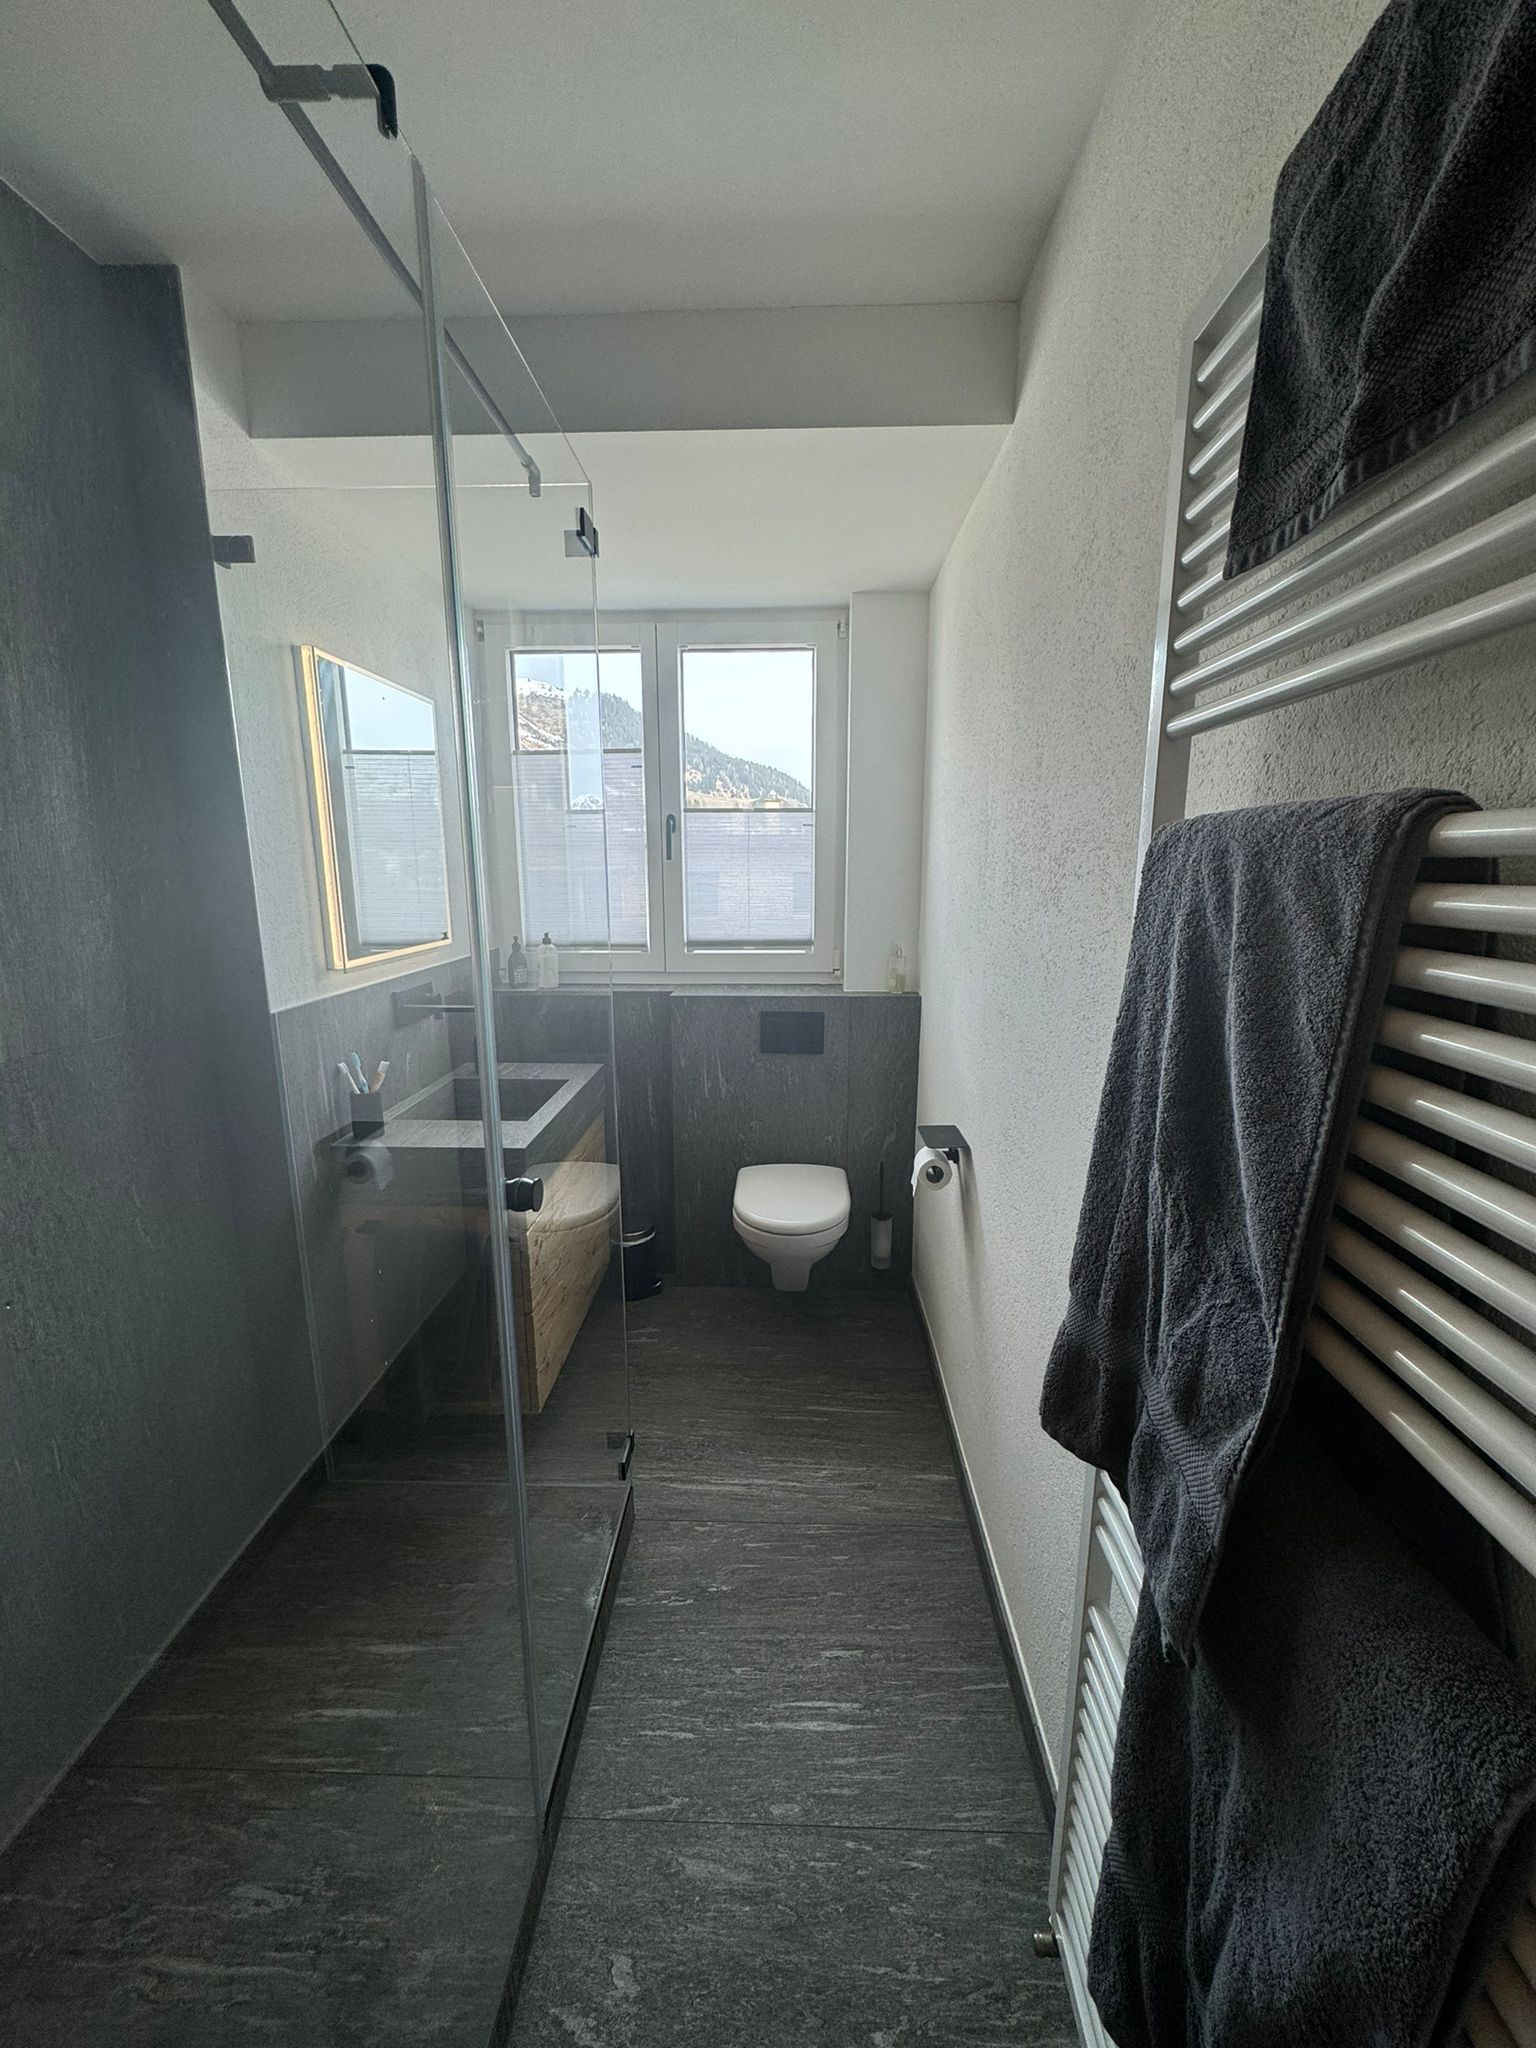 Ein Badezimmer mit Toilette, Waschbecken und Handtuchhalter.